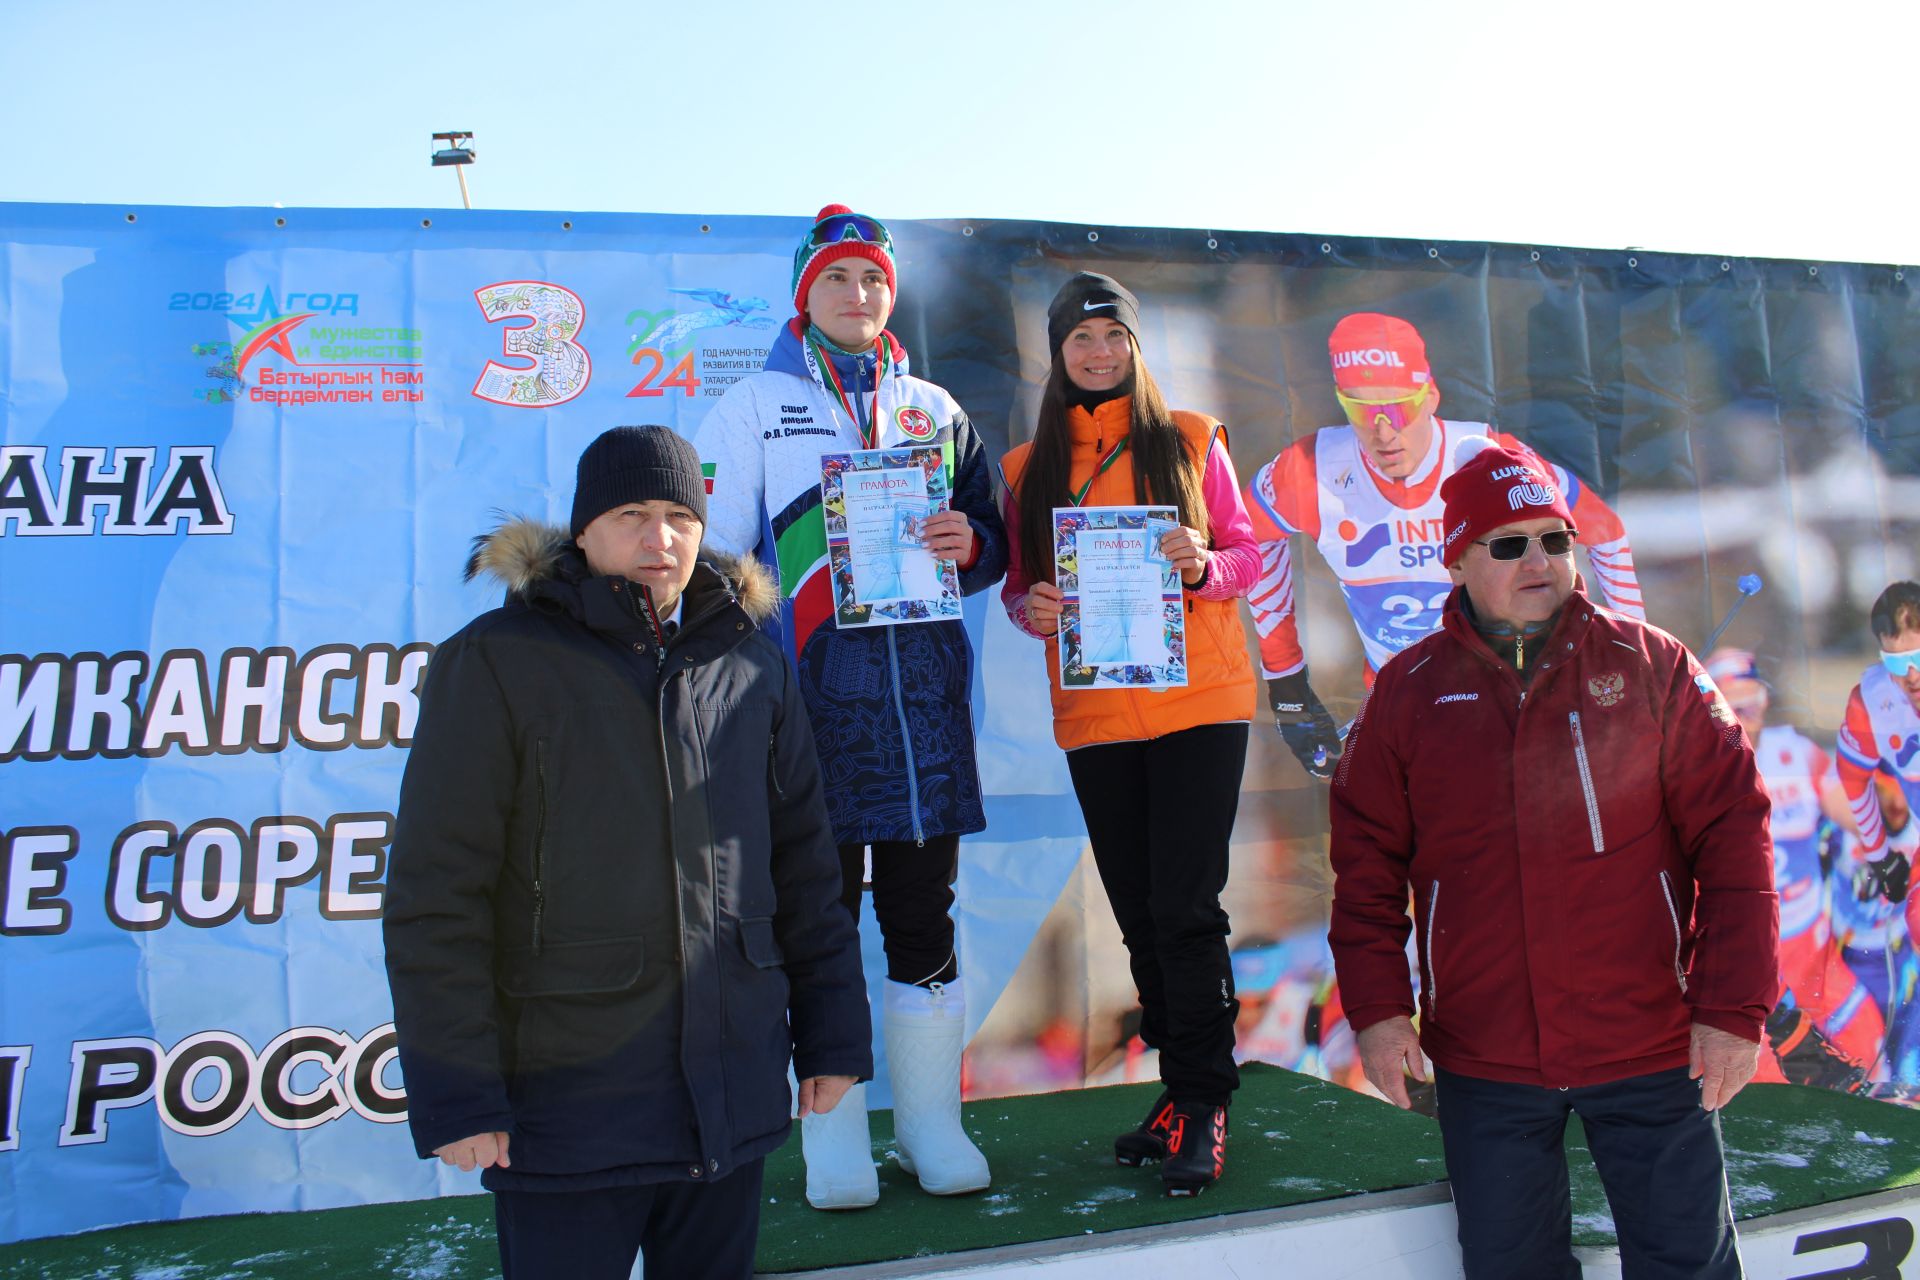 Заинцы присоединились к республиканским массовым соревнованиям «Лыжня Татарстана»